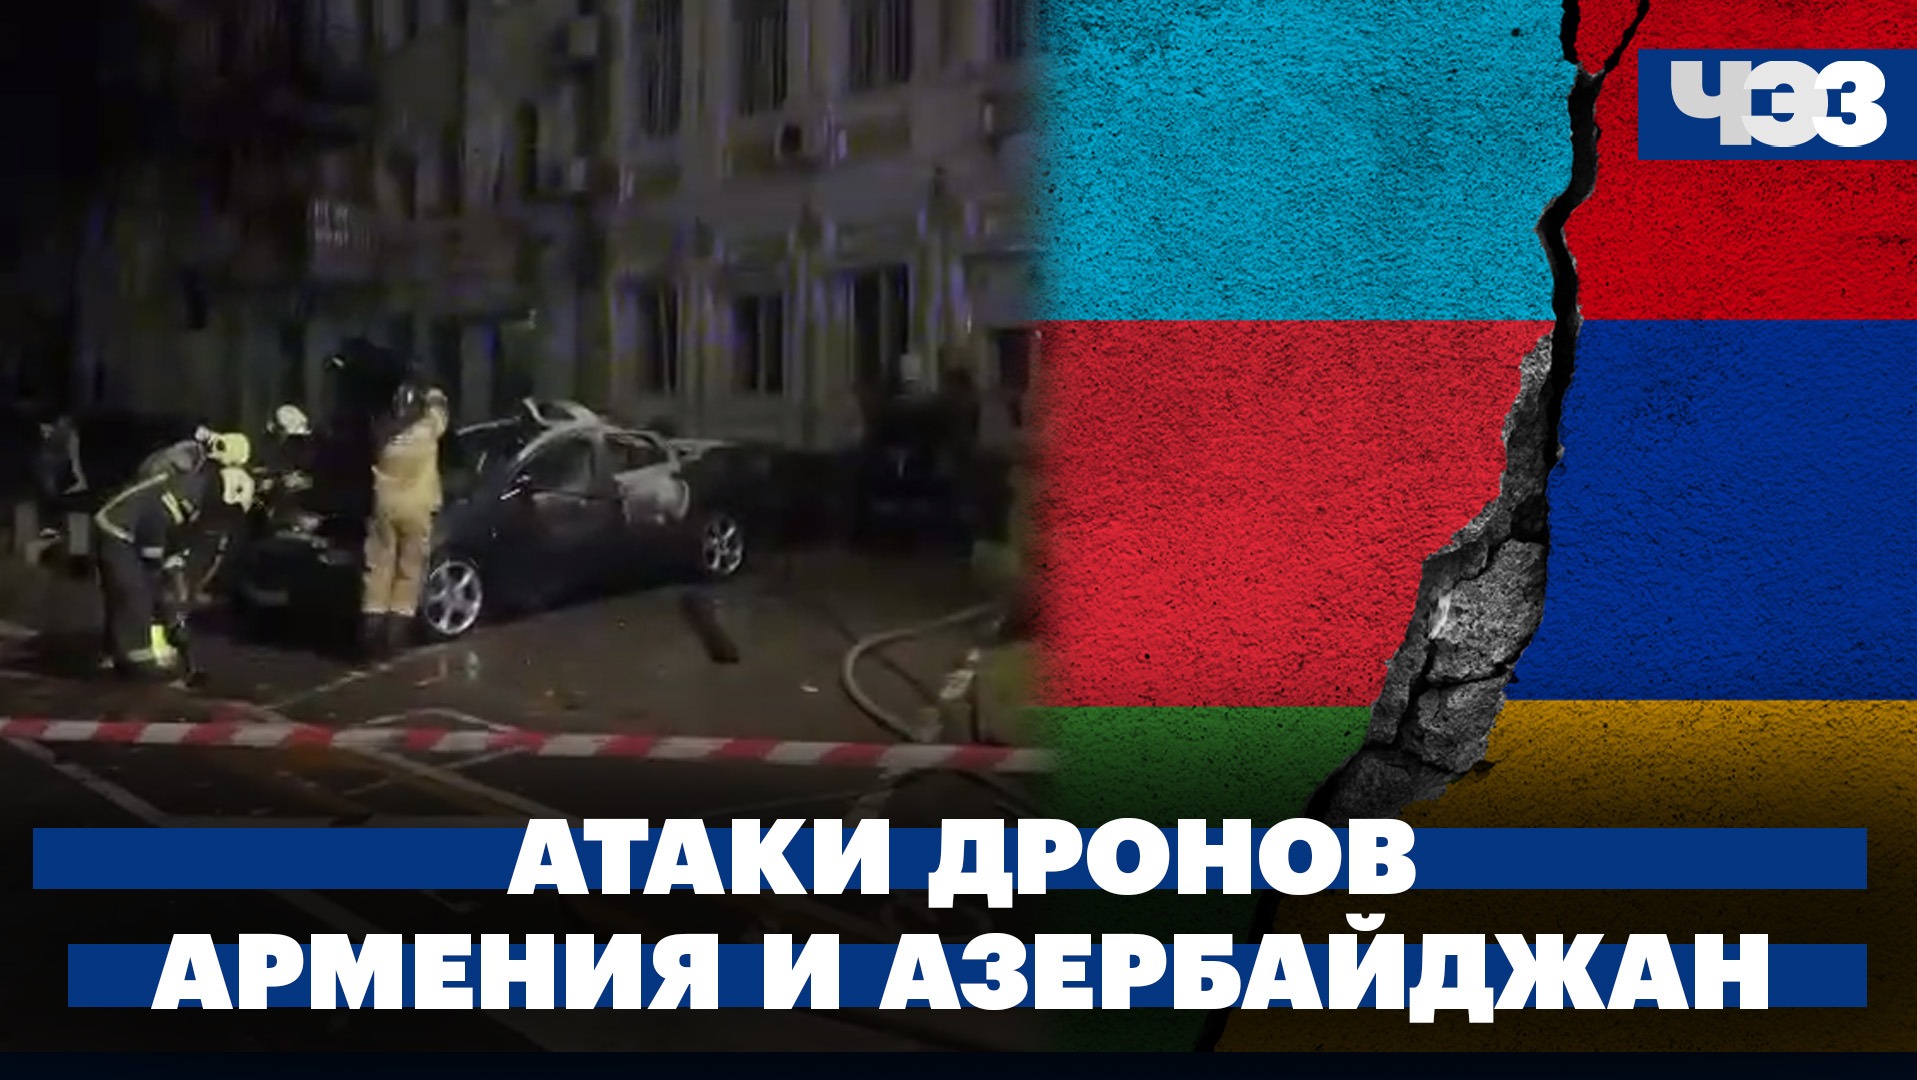 Атаки украинских дронов на российские регионы. Армения заявила, что Азербайджан стягиваетвойска